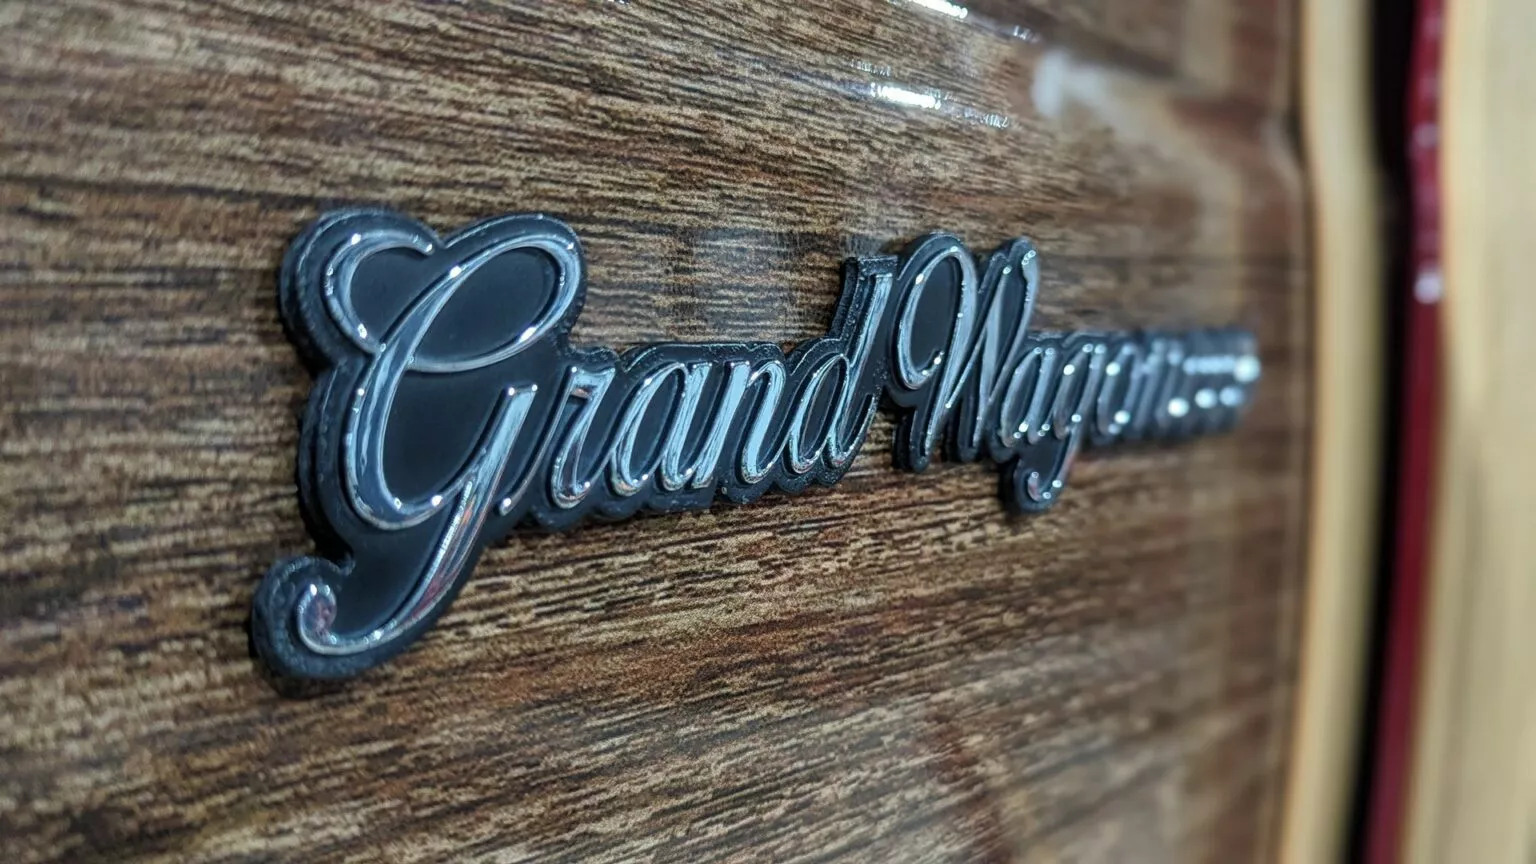 Vigilante Jeep Grand Wagoneer